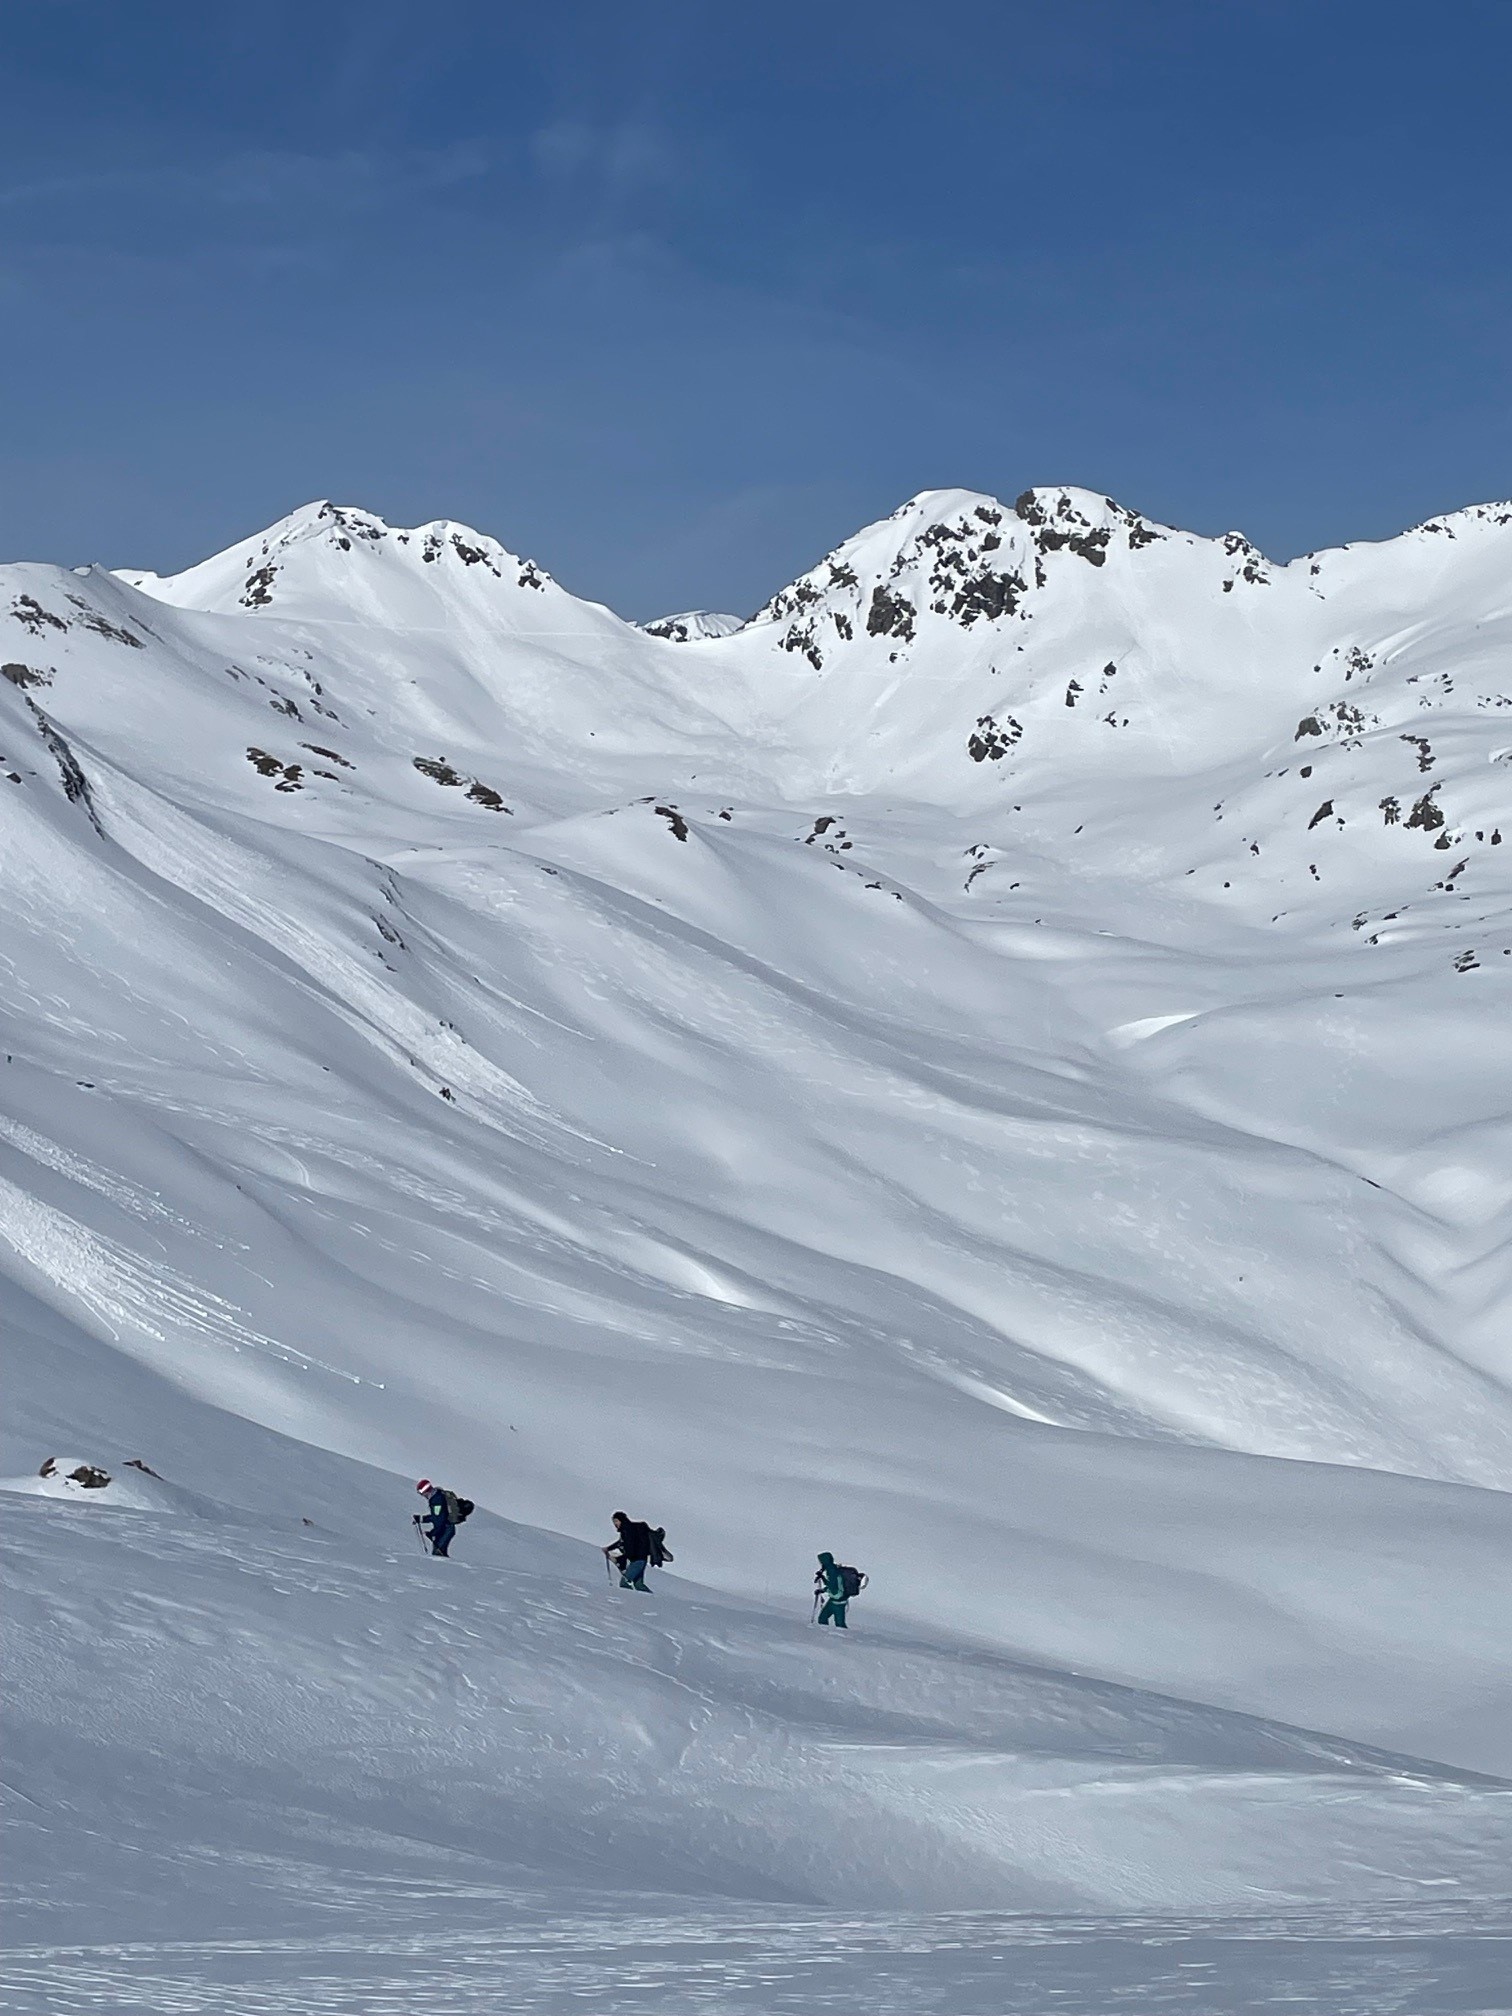 Ski touring through Lech's gorgeous terrain